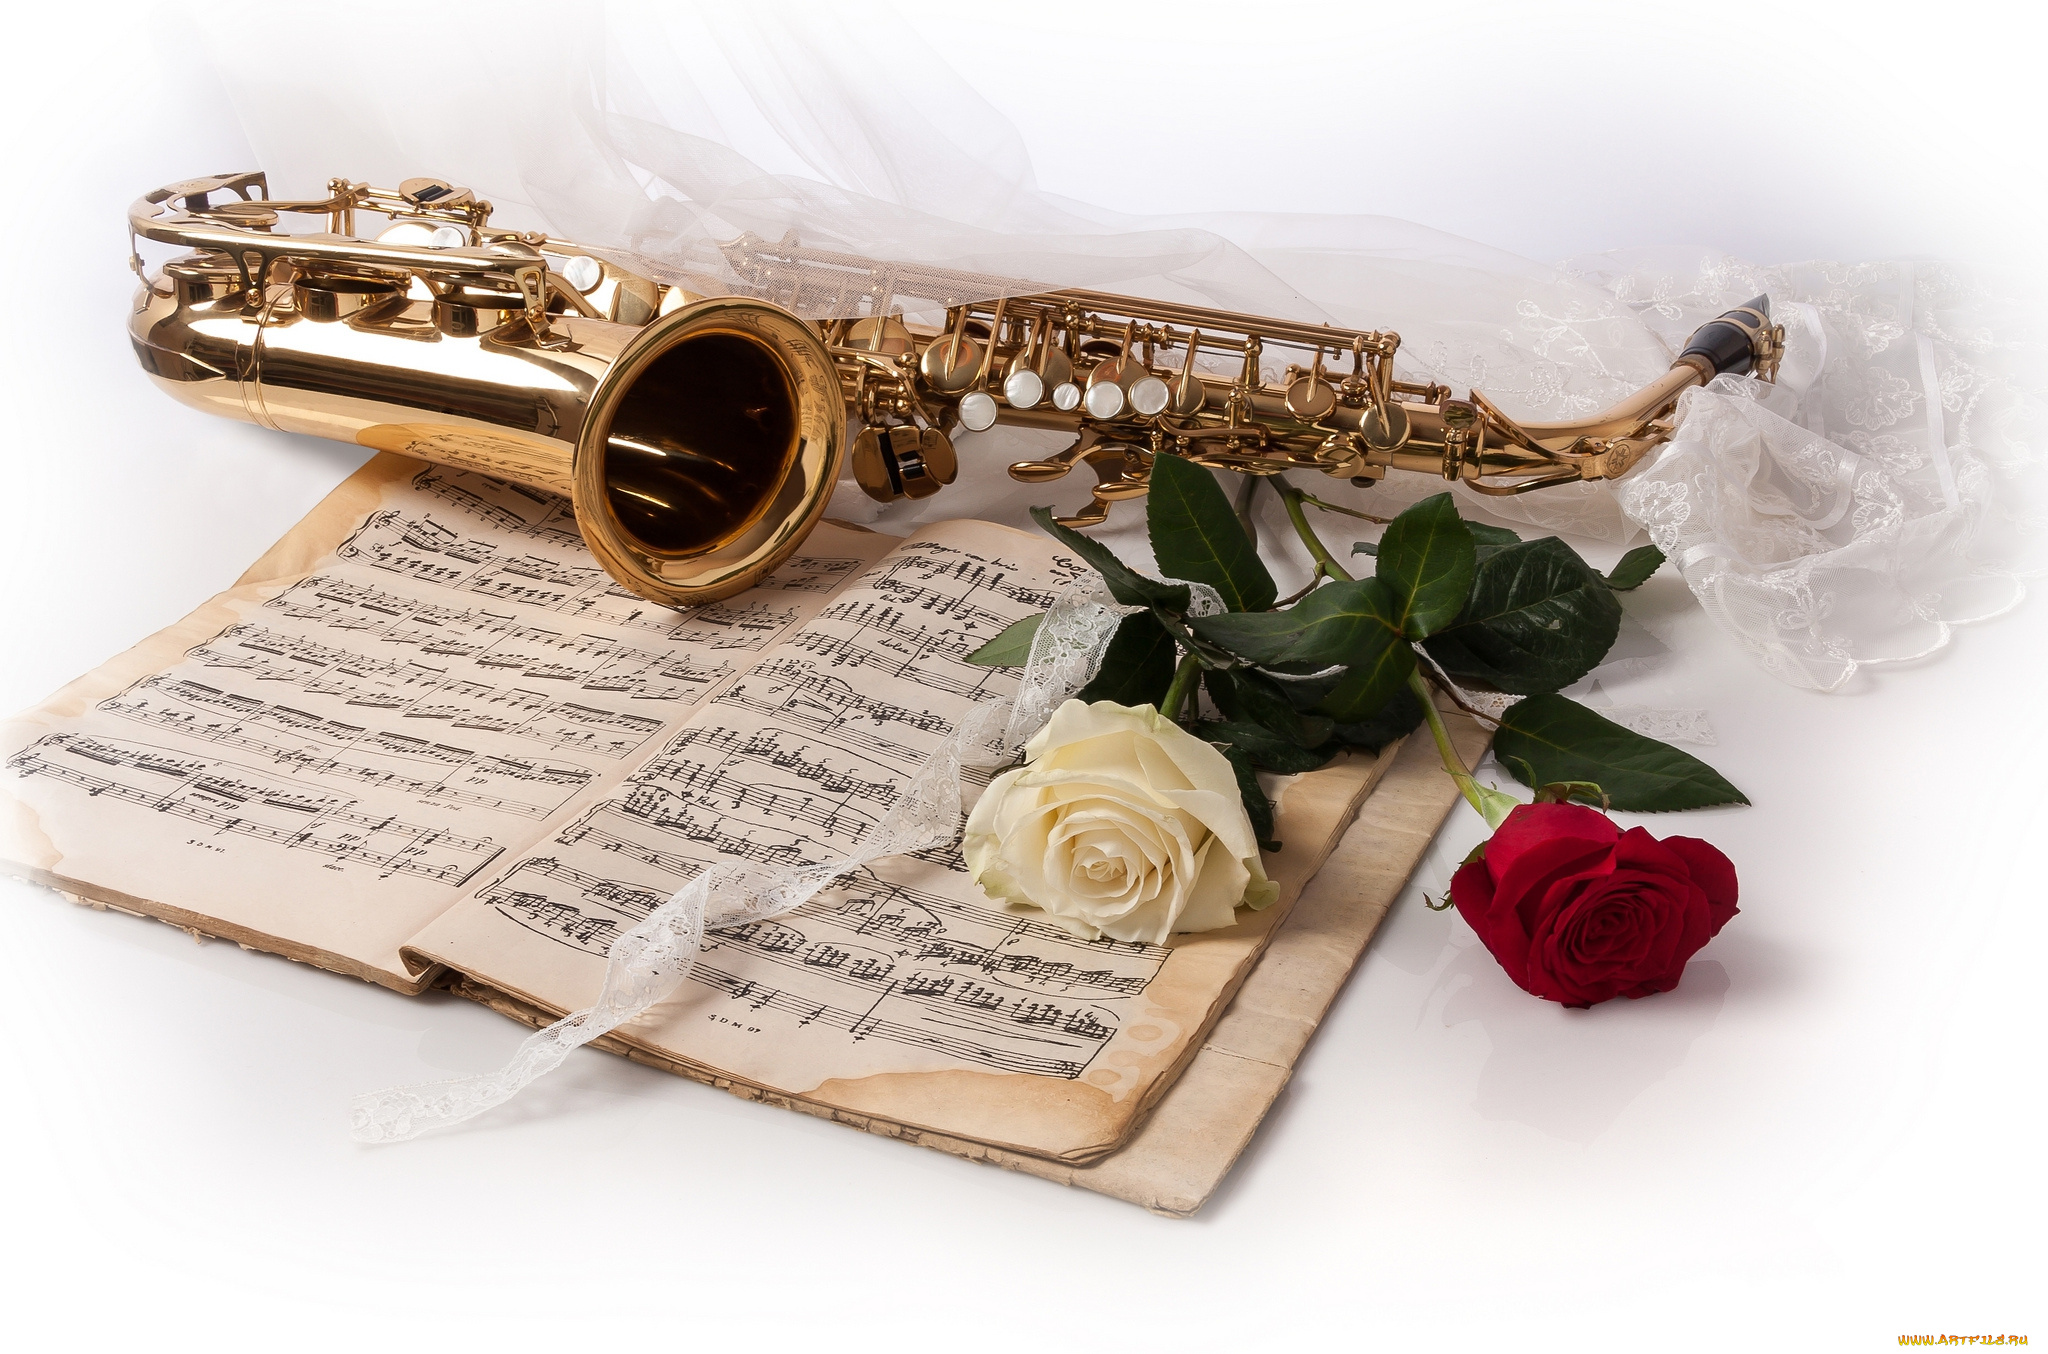 Красивый песни учителям. Музыкальные инструменты и цветы. Открытка музыканту. С днём рождения саксофонисту открытки. Цветы для музыканта.